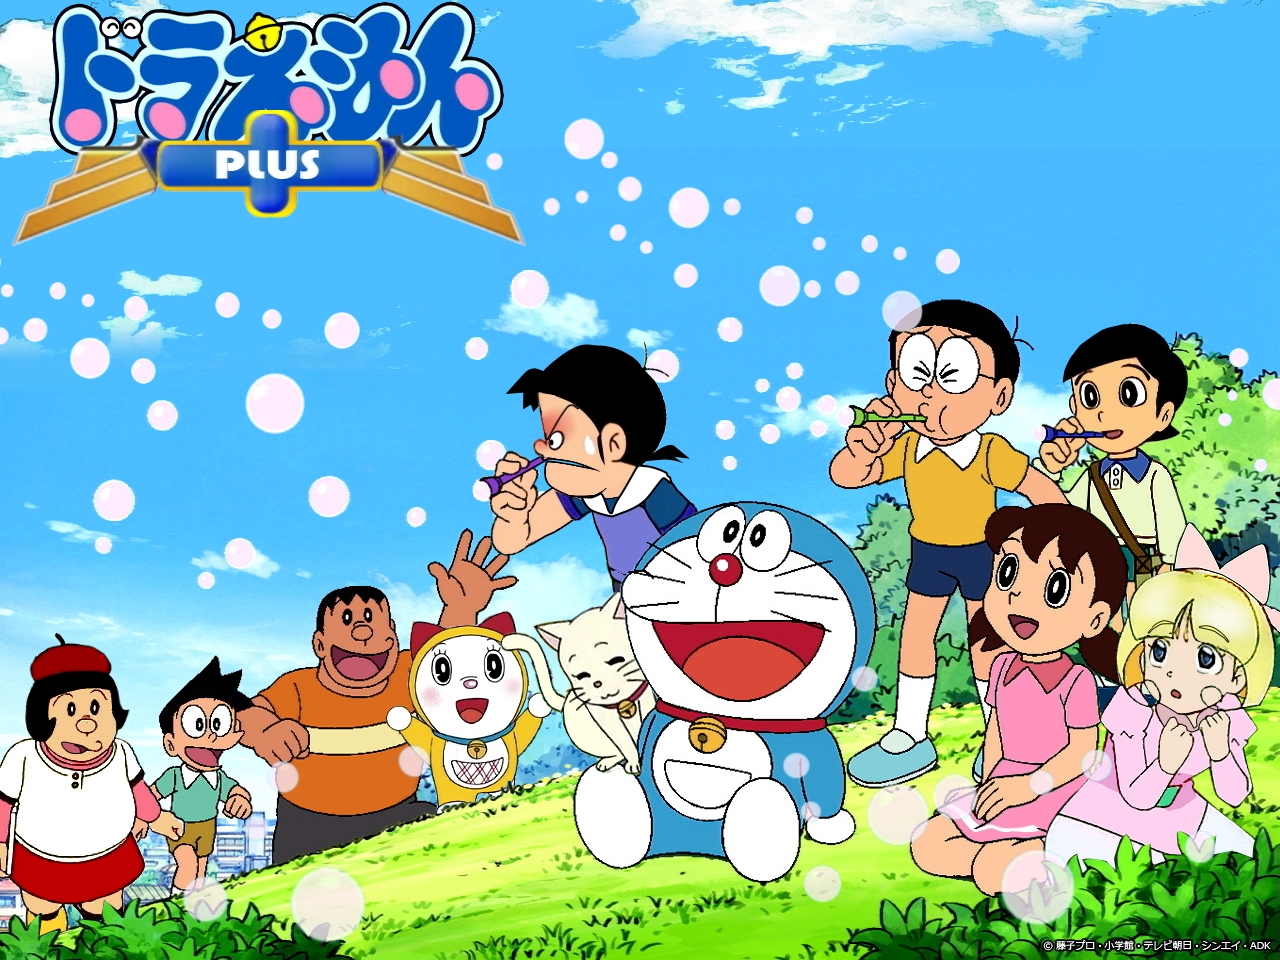 Doraemon Pictures sẽ là nguồn cảm hứng không thể bỏ qua cho những ai yêu thích chú mèo máy Doremon. Với những hình ảnh đẹp và ý nghĩa, Doraemon Pictures sẽ giúp bạn thêm niềm vui và sự thoải mái trong cuộc sống hàng ngày. Hãy cùng khám phá những hình ảnh tuyệt vời này ngay nhé!